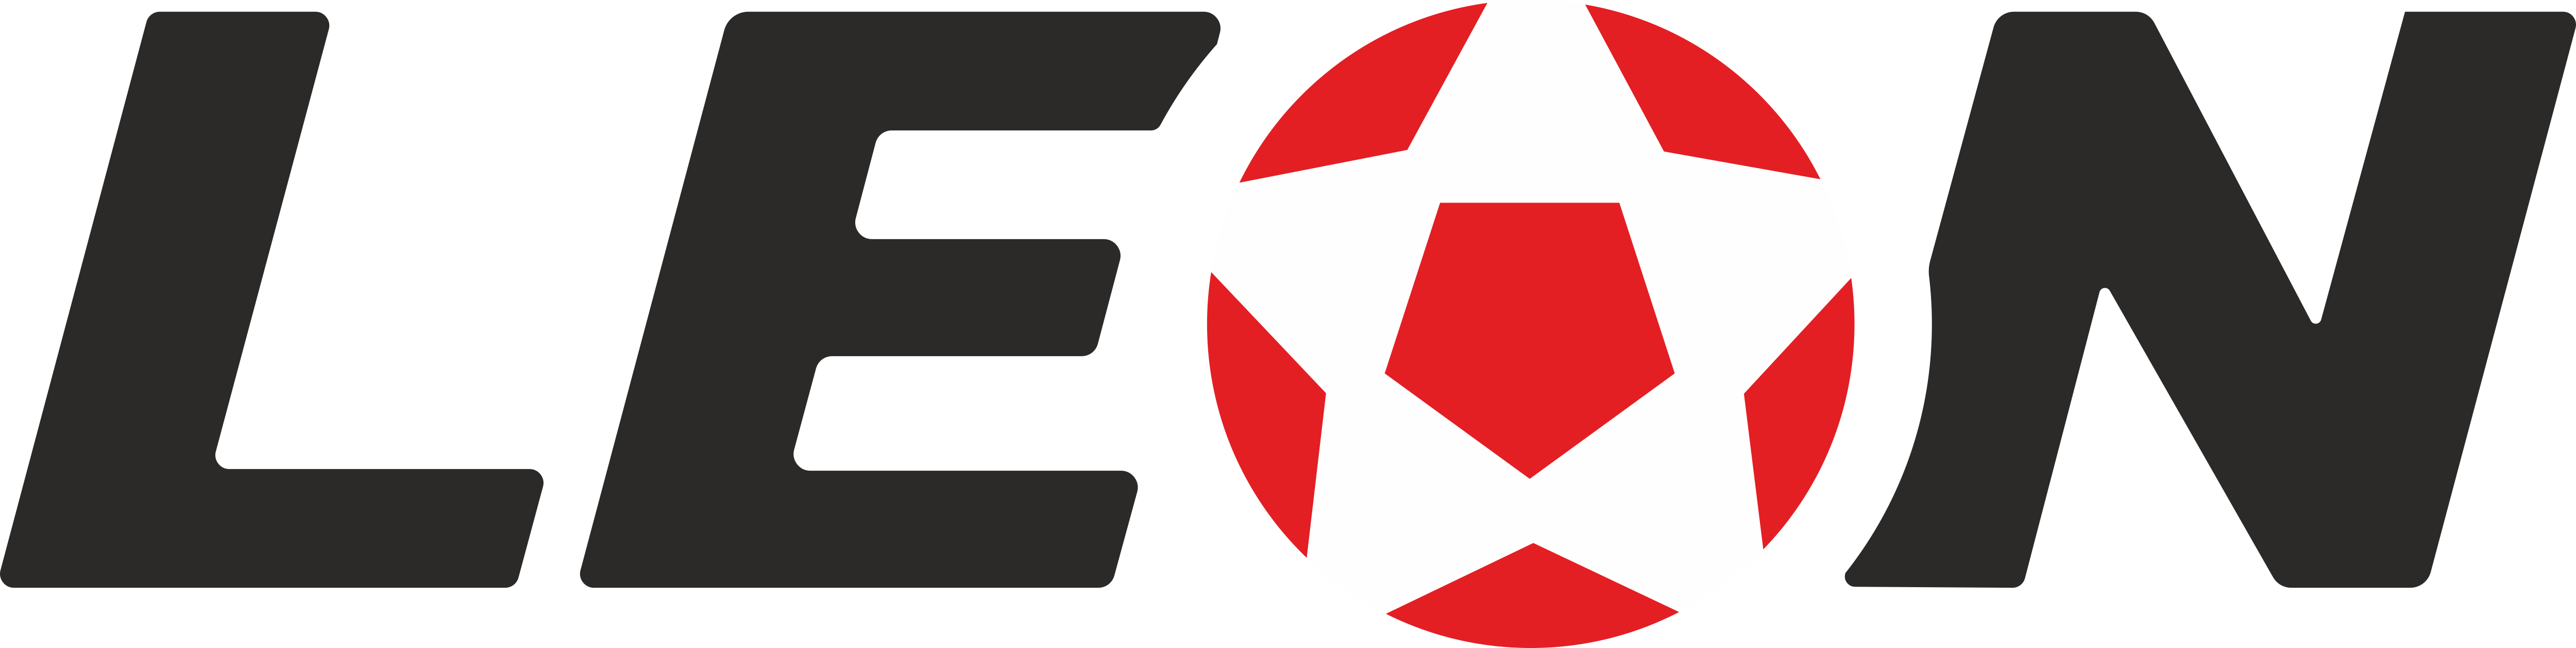 Логотип букмекерской компании Леон